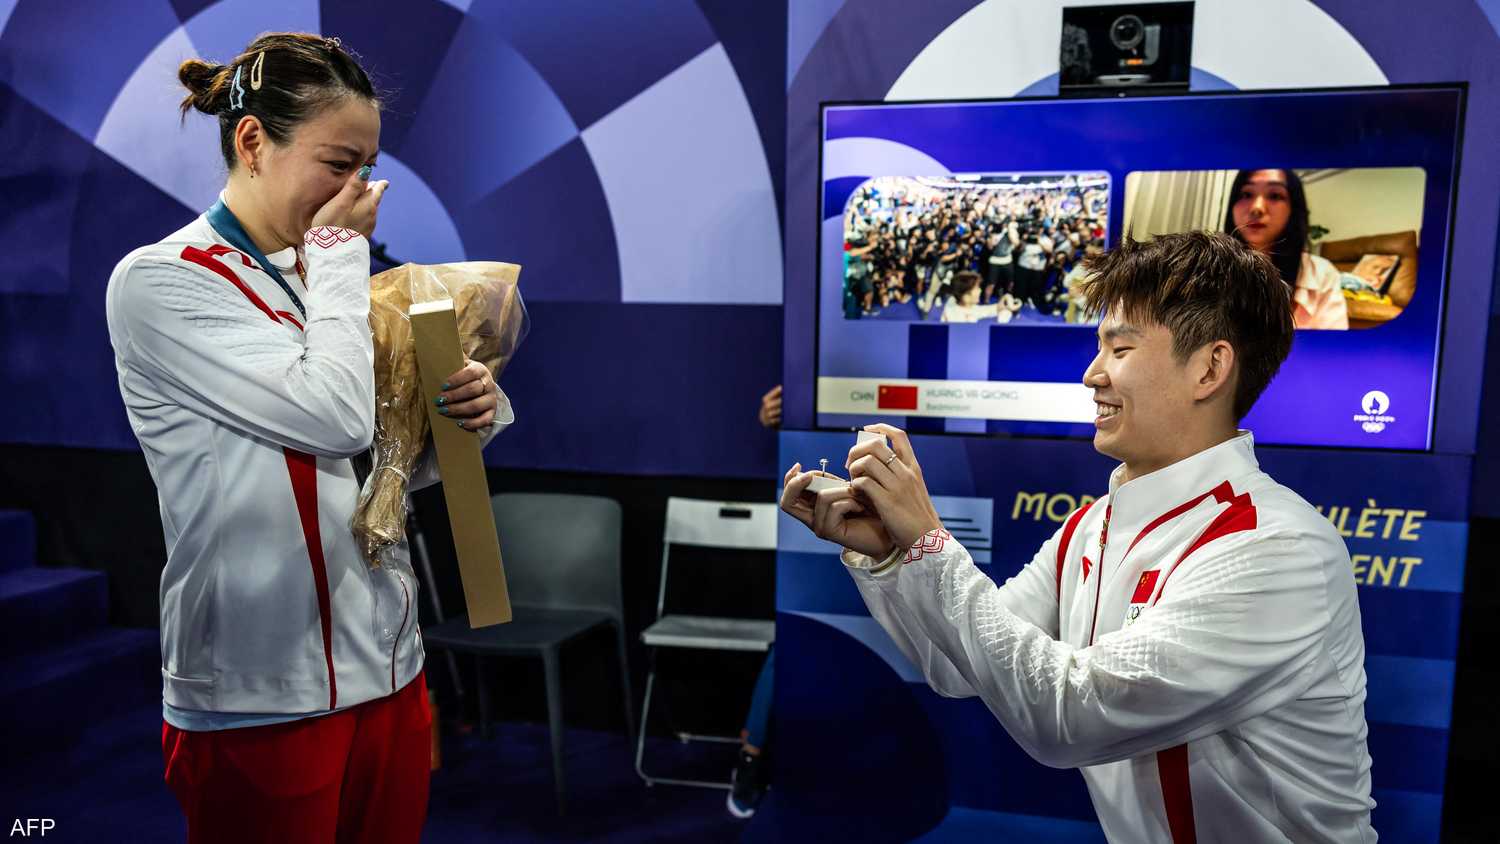 زواج صيني يفاجئ جماهير أولمبياد باريس (فيديو)